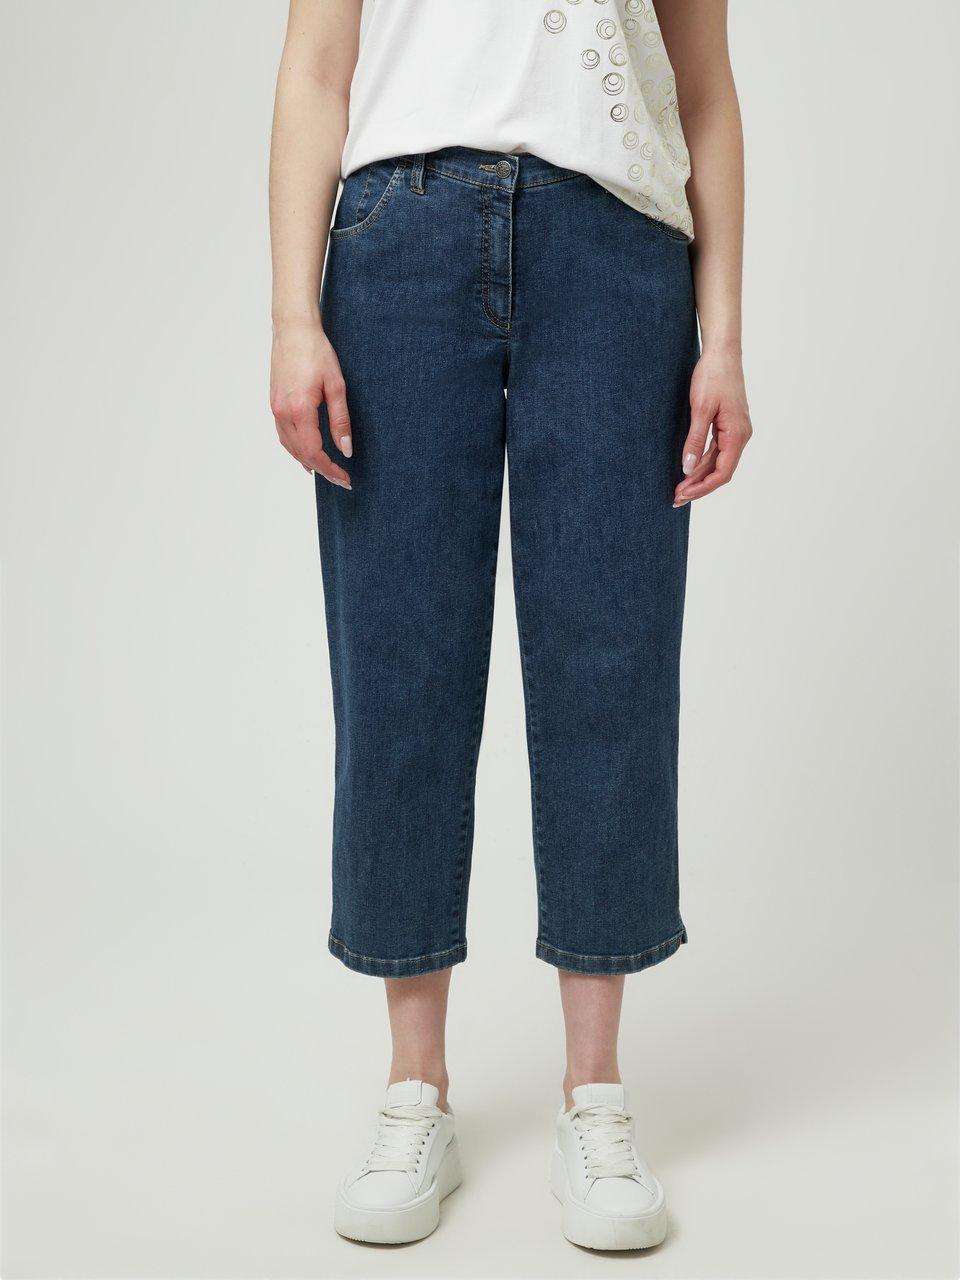 Комфортные джинсовые брюки-кюлоты